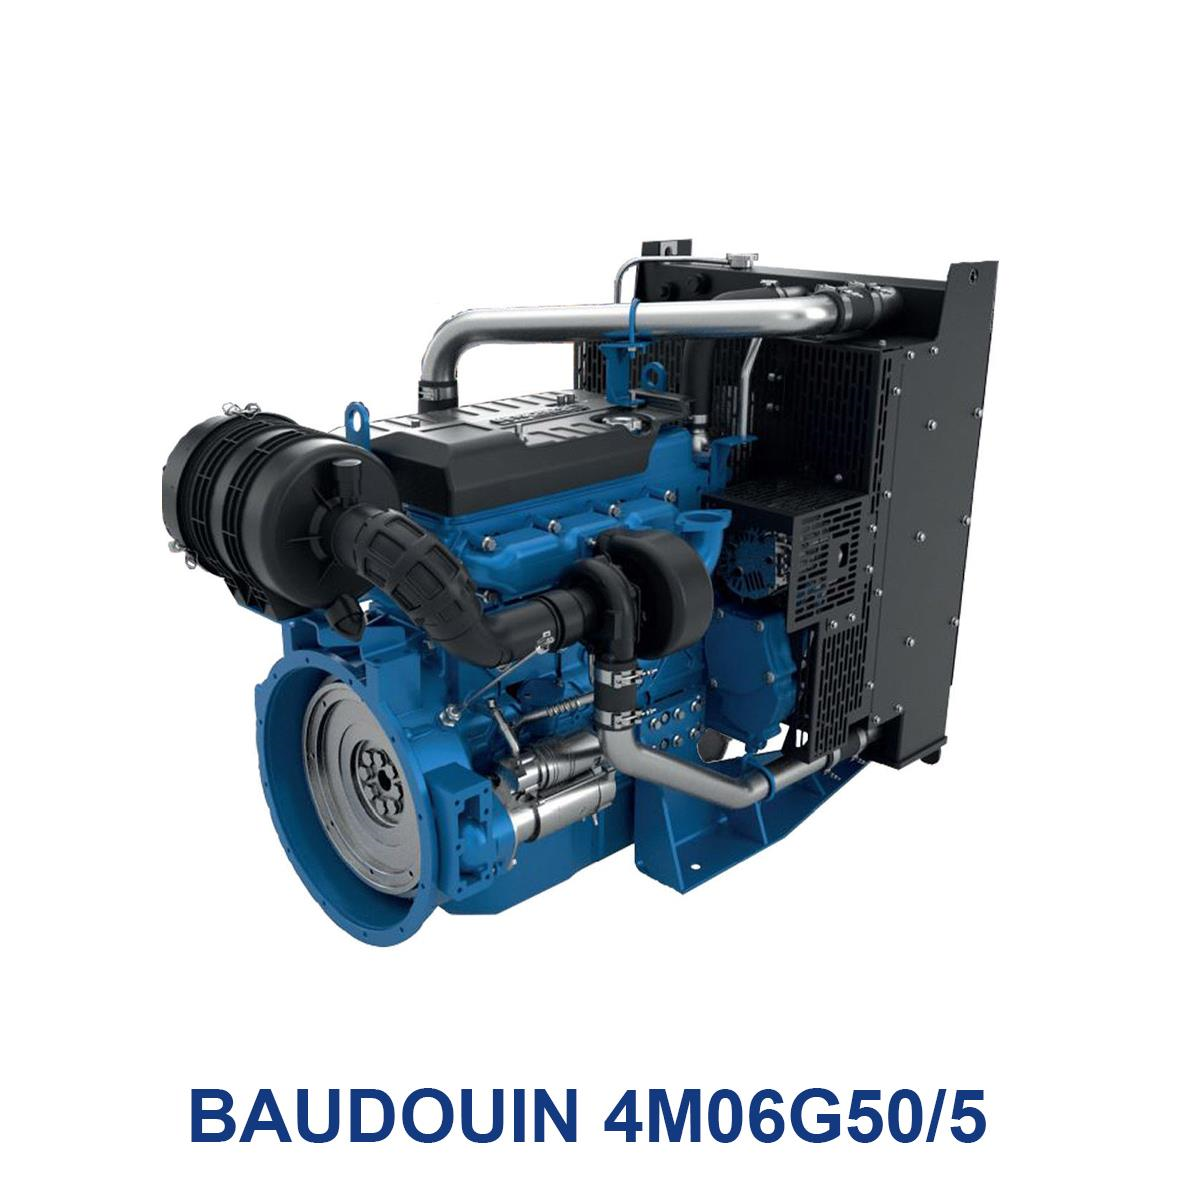 BAUDOUIN-4M06G50_5